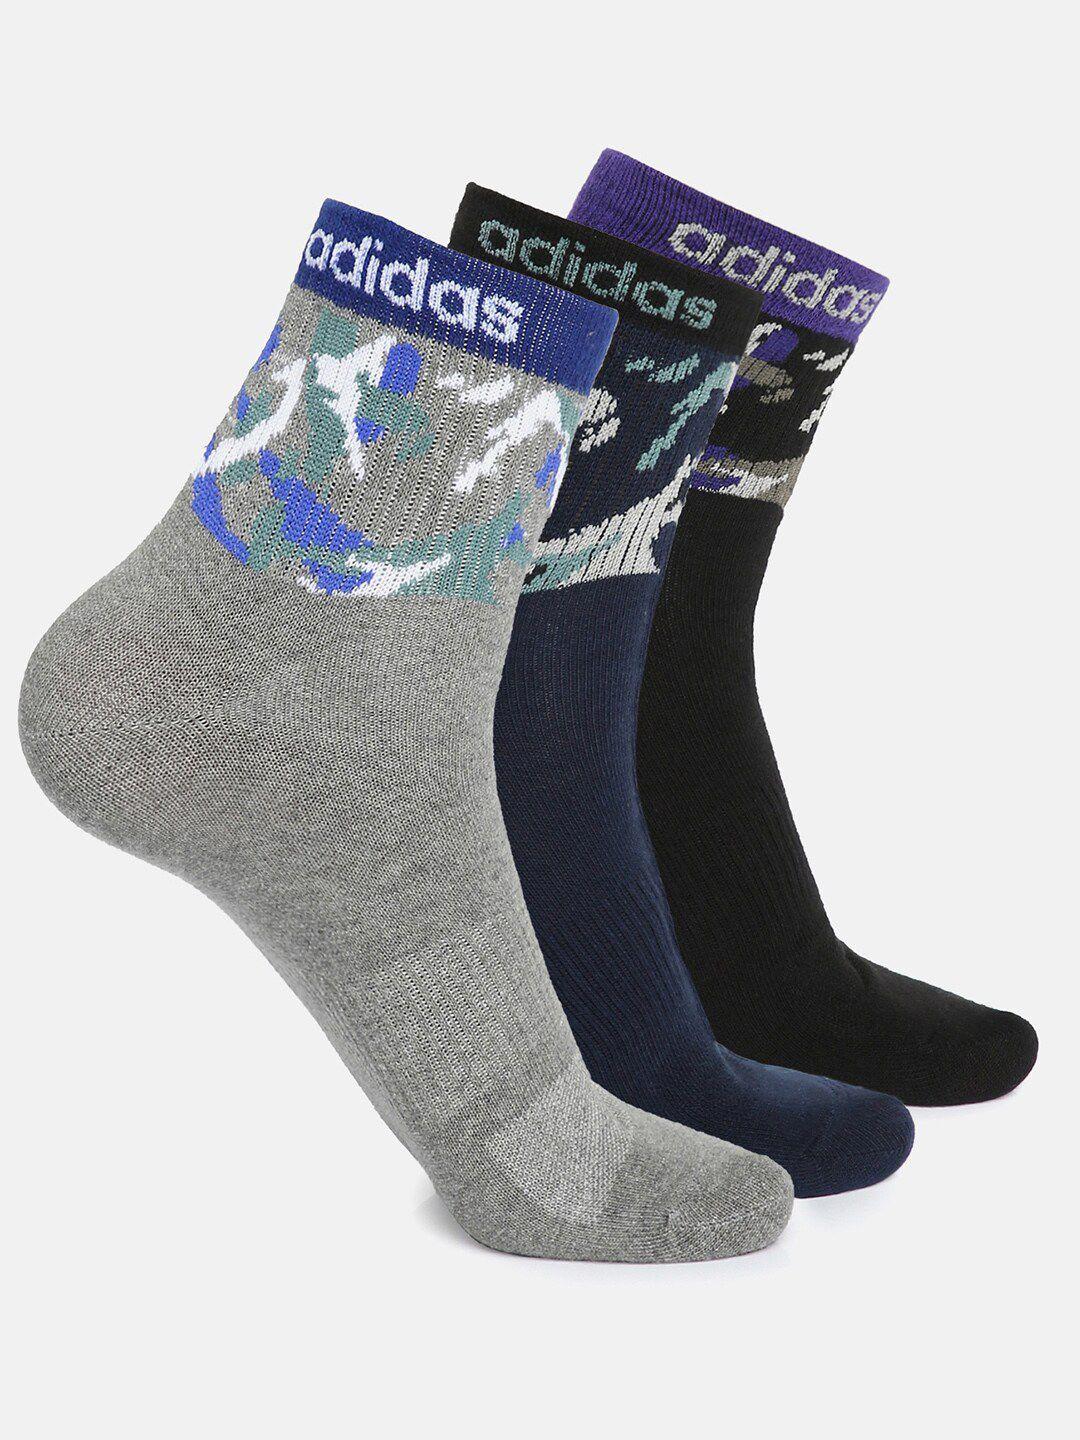 adidas-men-pack-of-3-ankle-length-socks